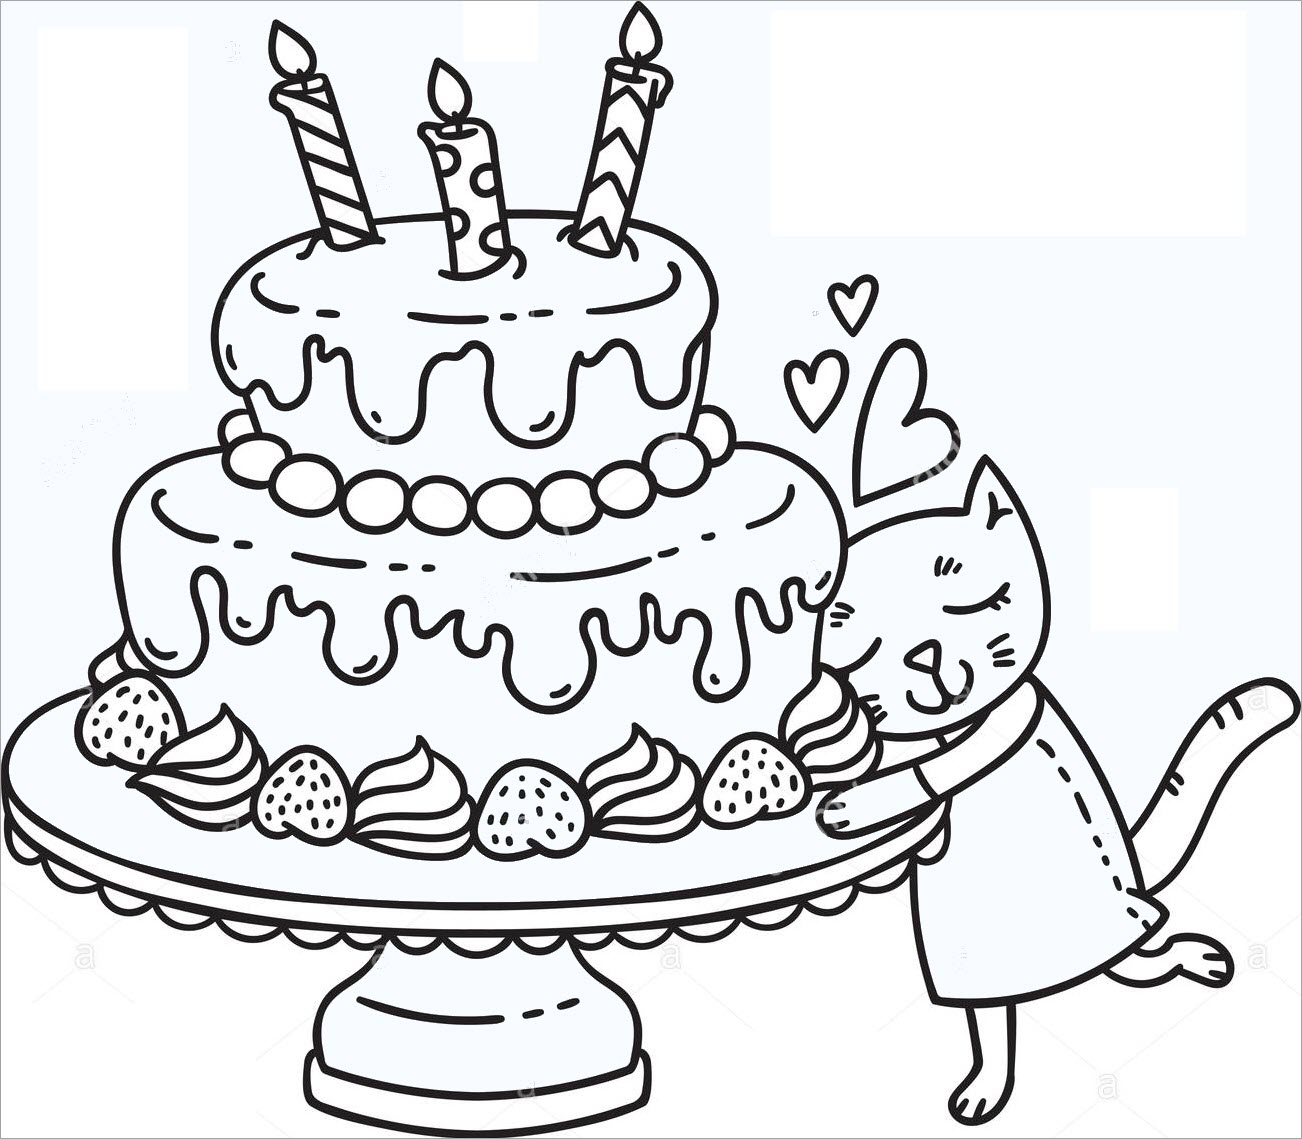 Tranh tô màu bánh sinh nhật đơn giản đẹp nhất cho bé yêu  Sinh nhật Bánh  sinh nhật Tranh